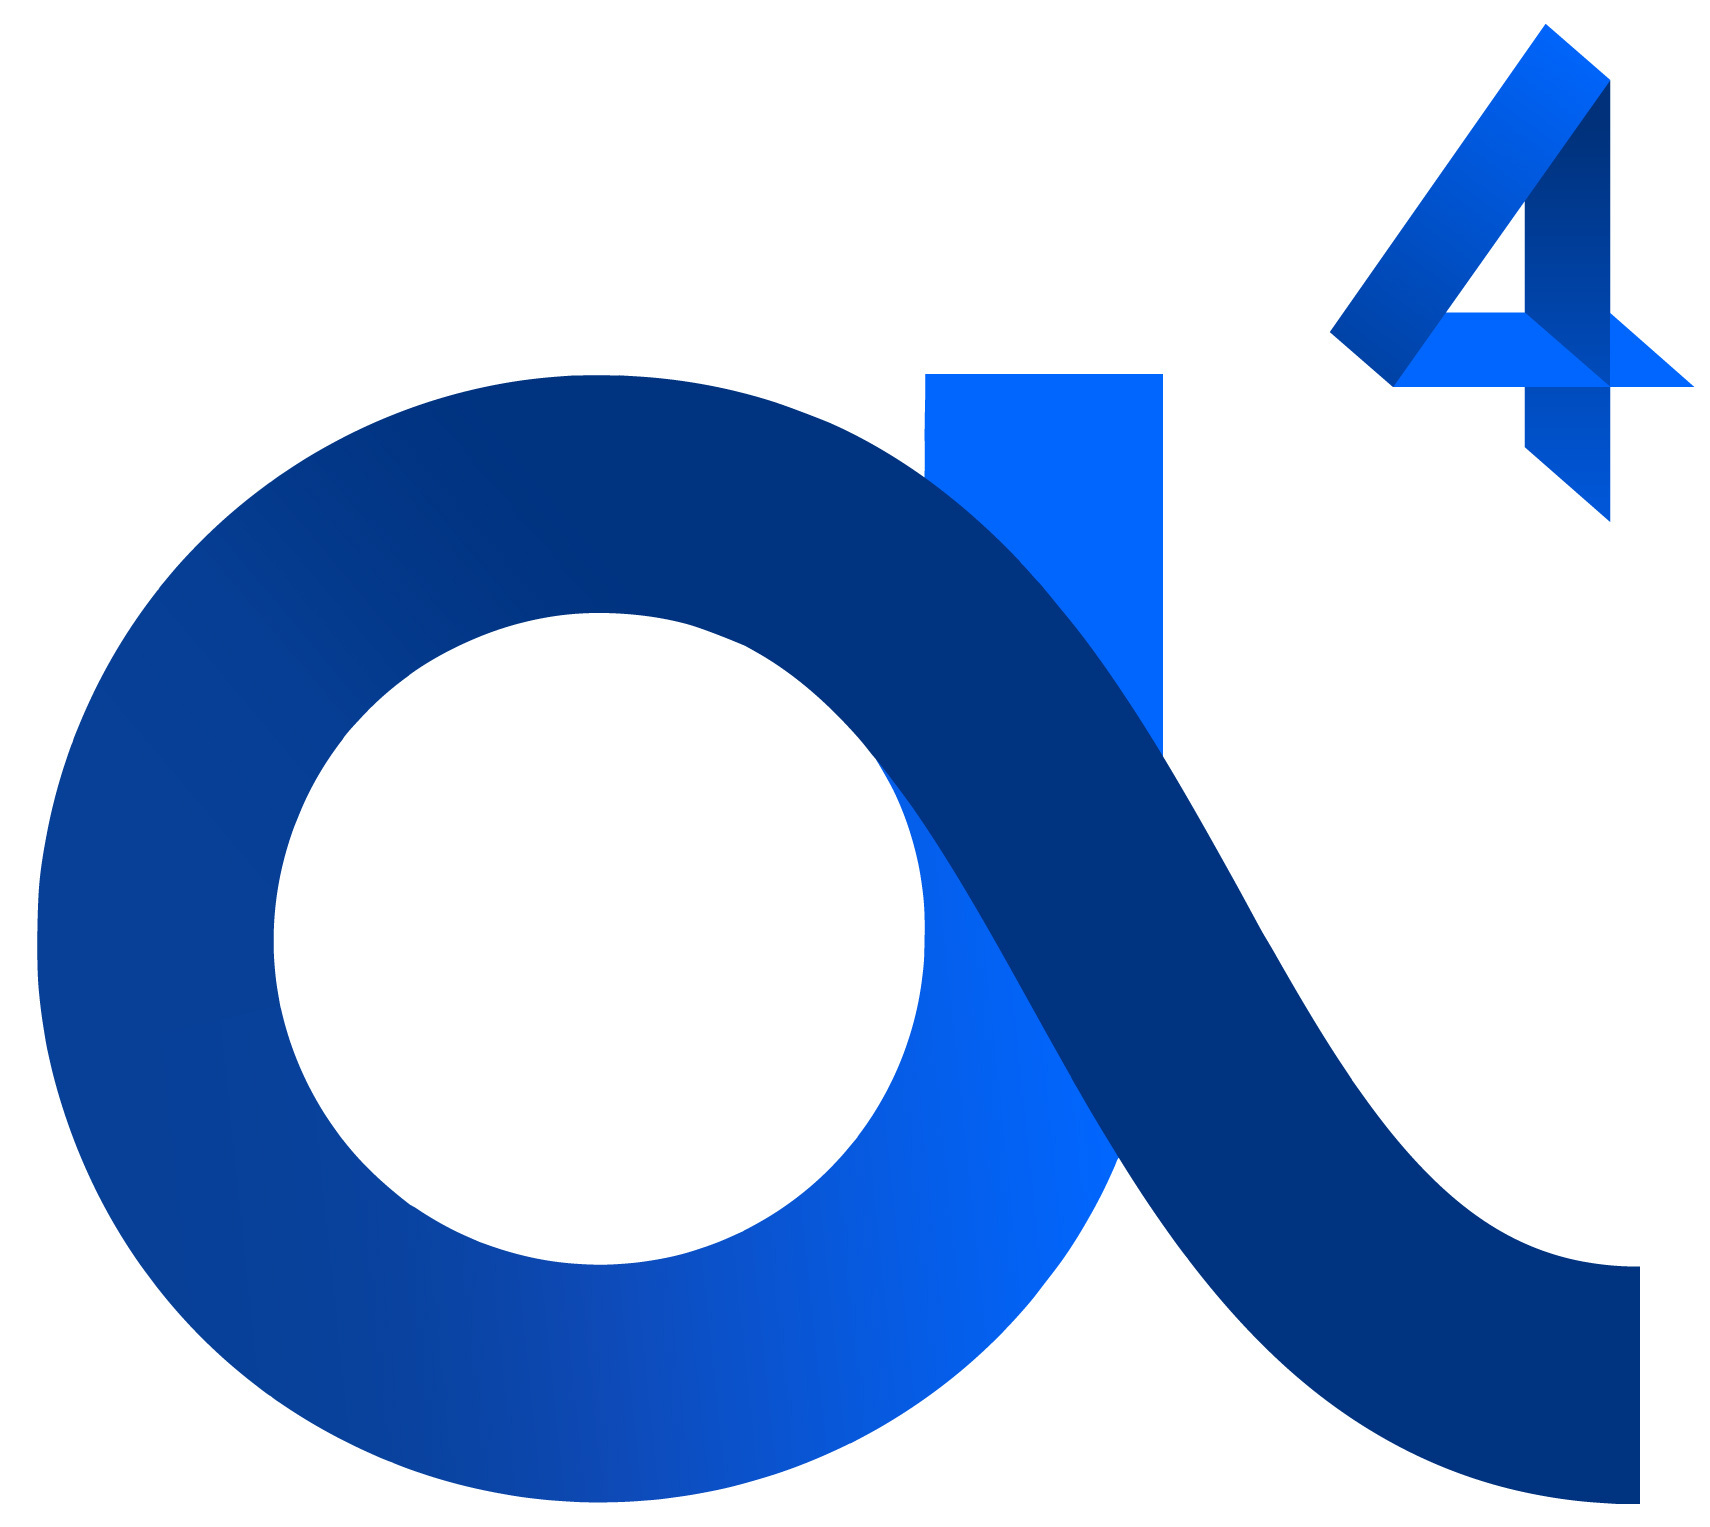 A4 or 4A logo